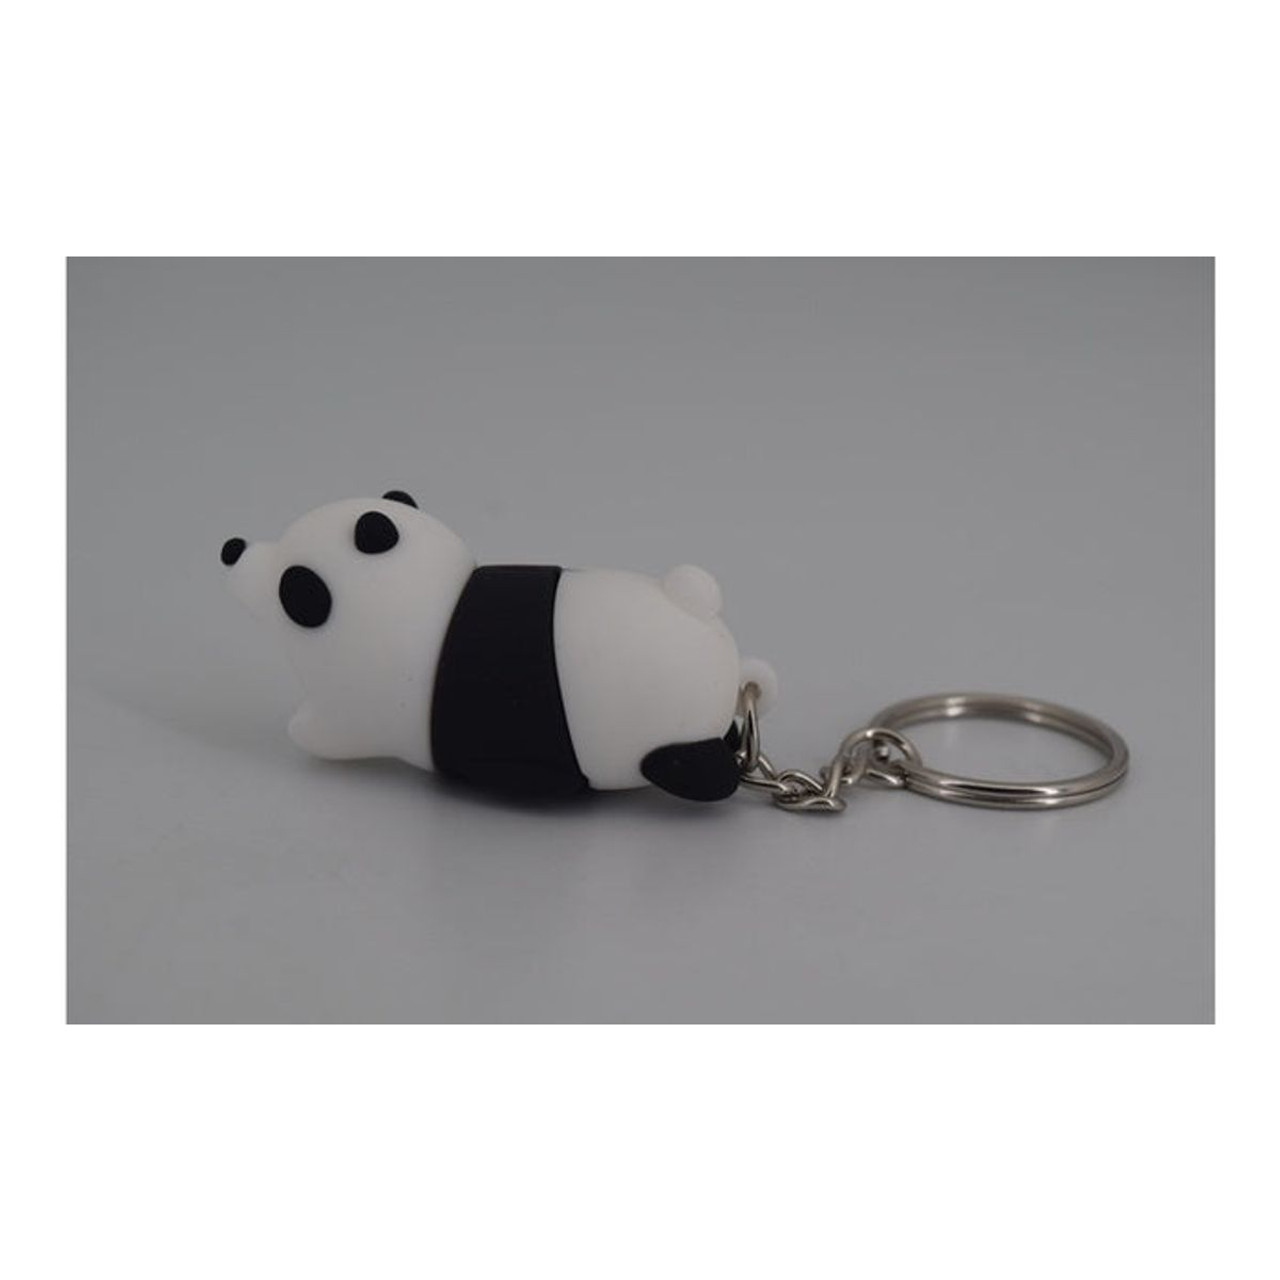 Panda USB Drive Keychain (64GB) product image